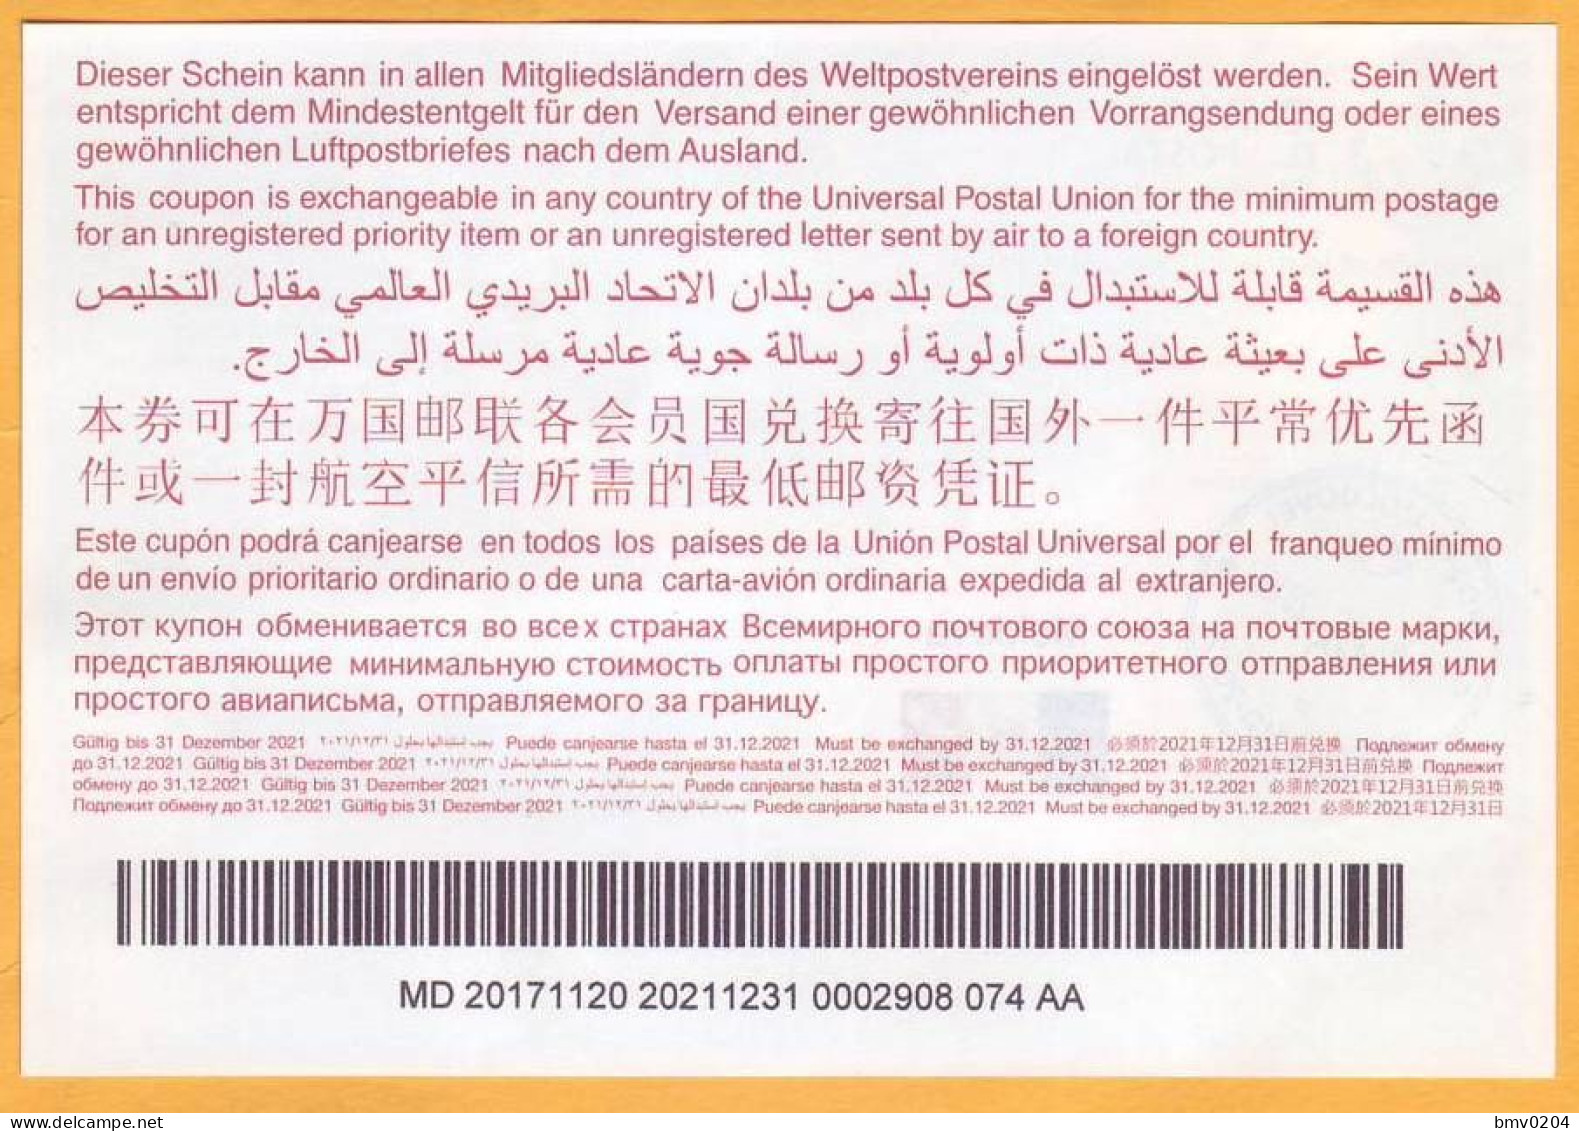 2017  Moldova Moldavie Moldau  Universal Postal Union. International Return Coupon. 0002908 074 AA - UPU (Wereldpostunie)